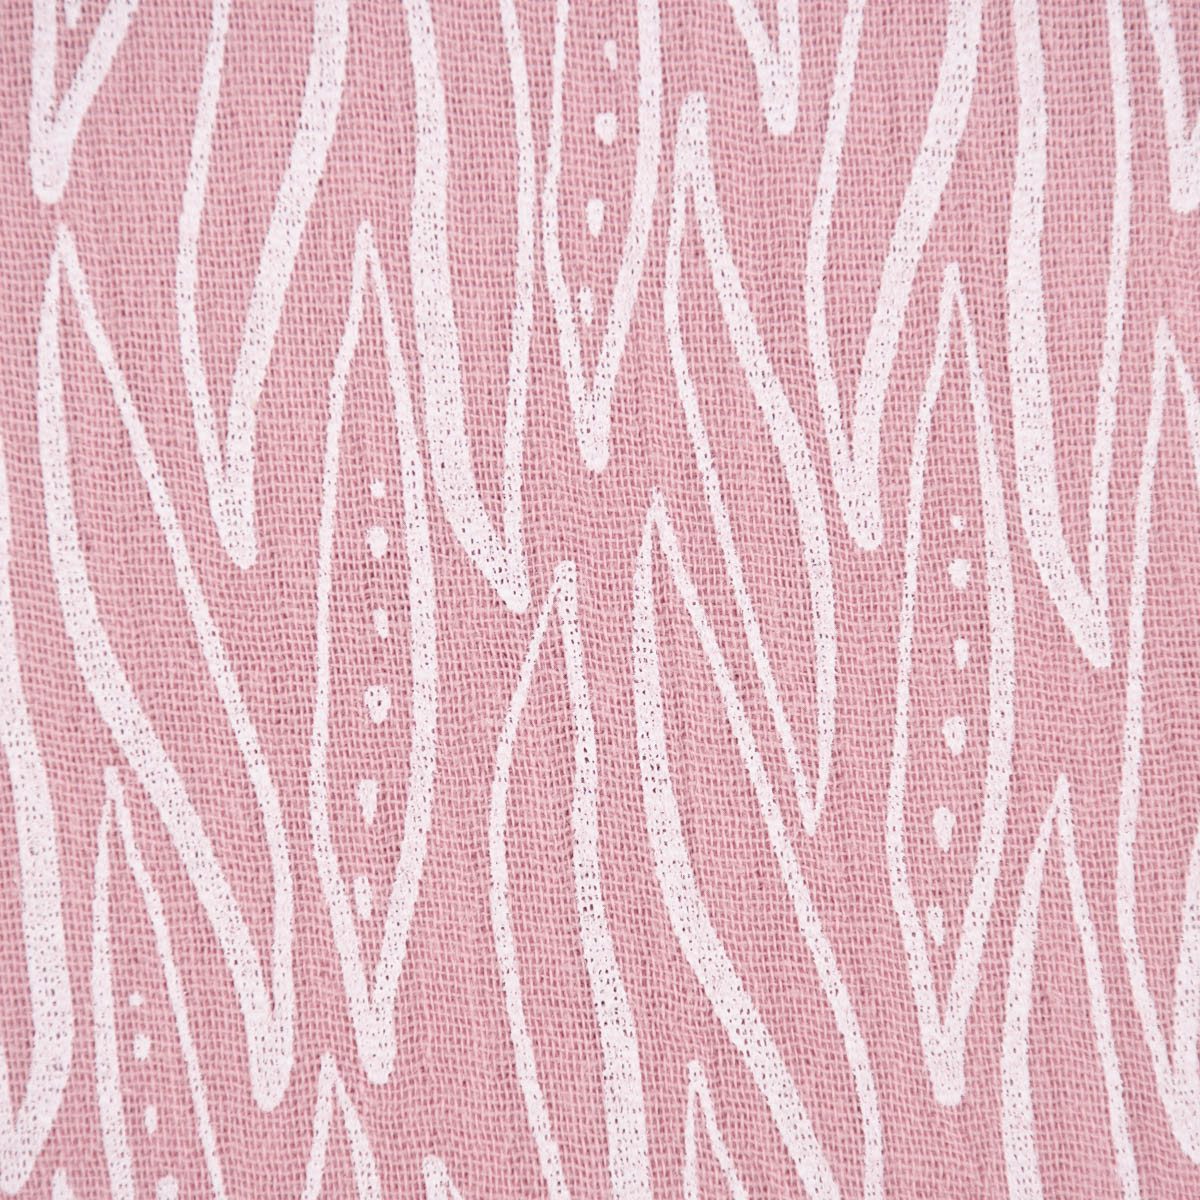 SCHÖNER LEBEN. Stoff Double Gauze Musselin LEAVES geometrische Blätter rosa weiß 1,35m, allergikergeeignet